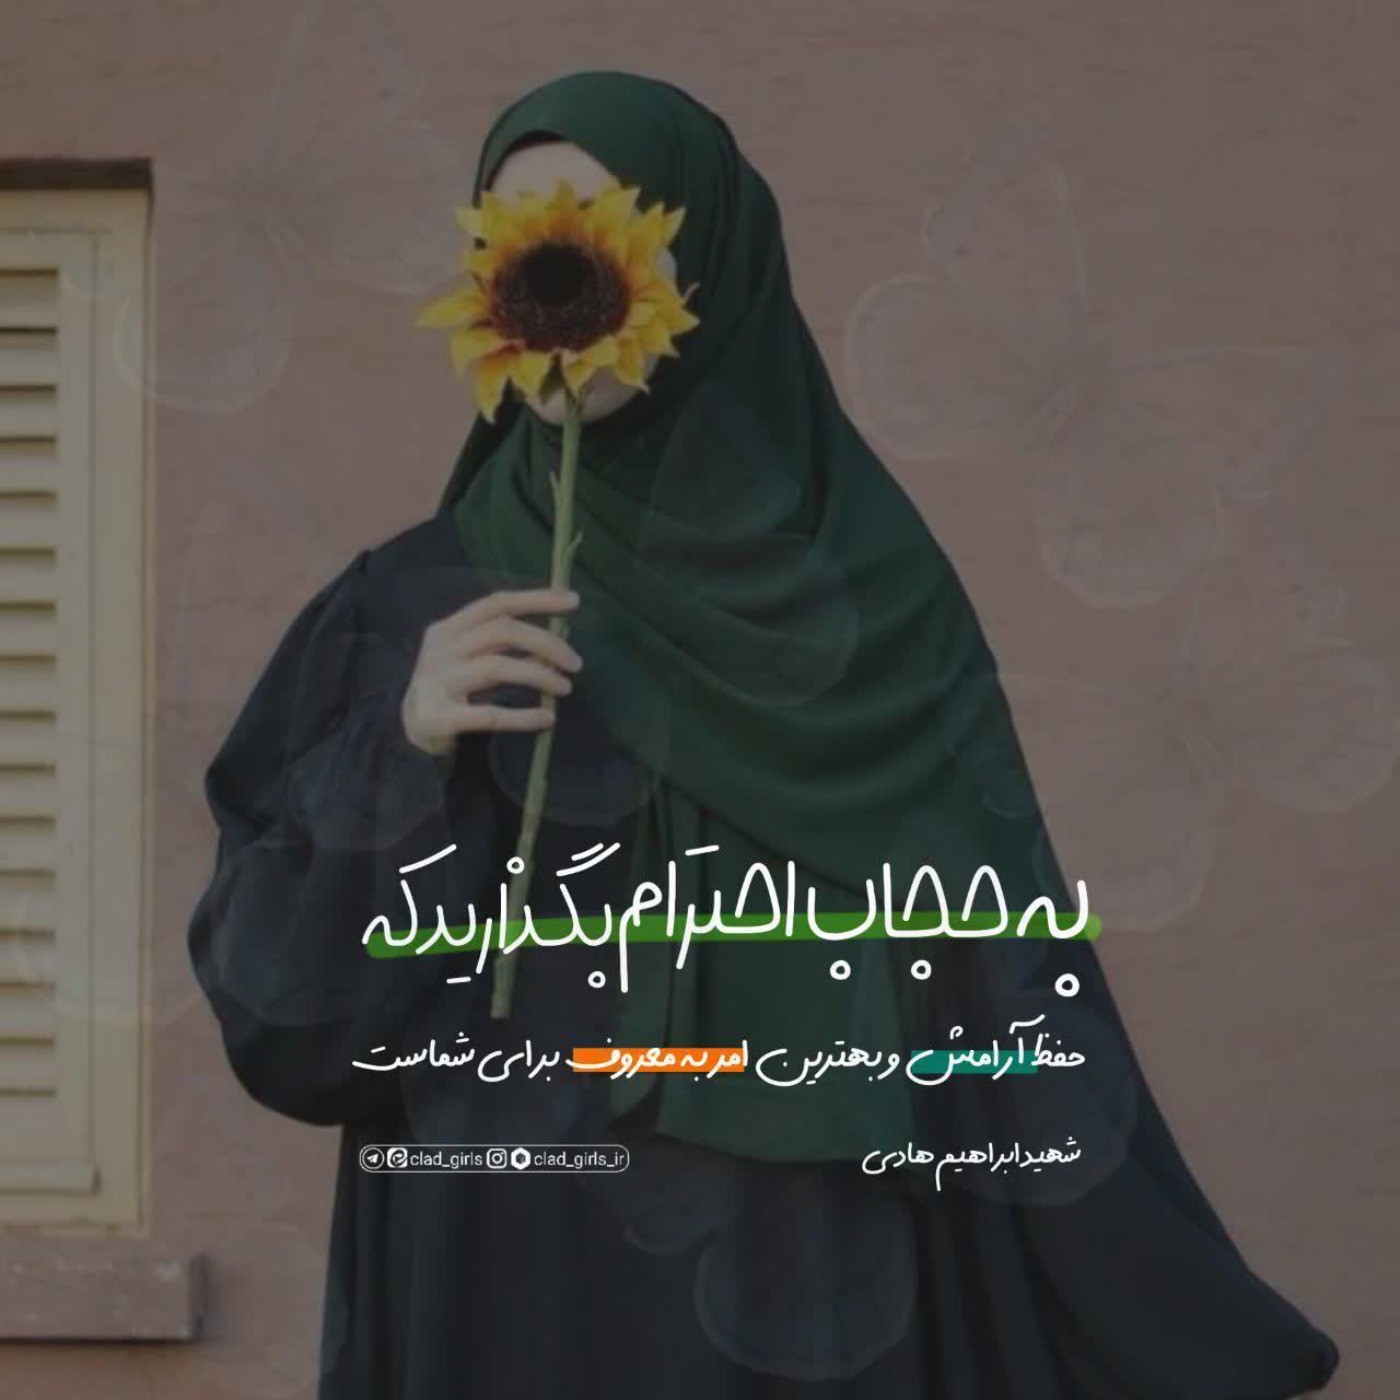 پست مذهبی _ حجاب یادگار زهرائی